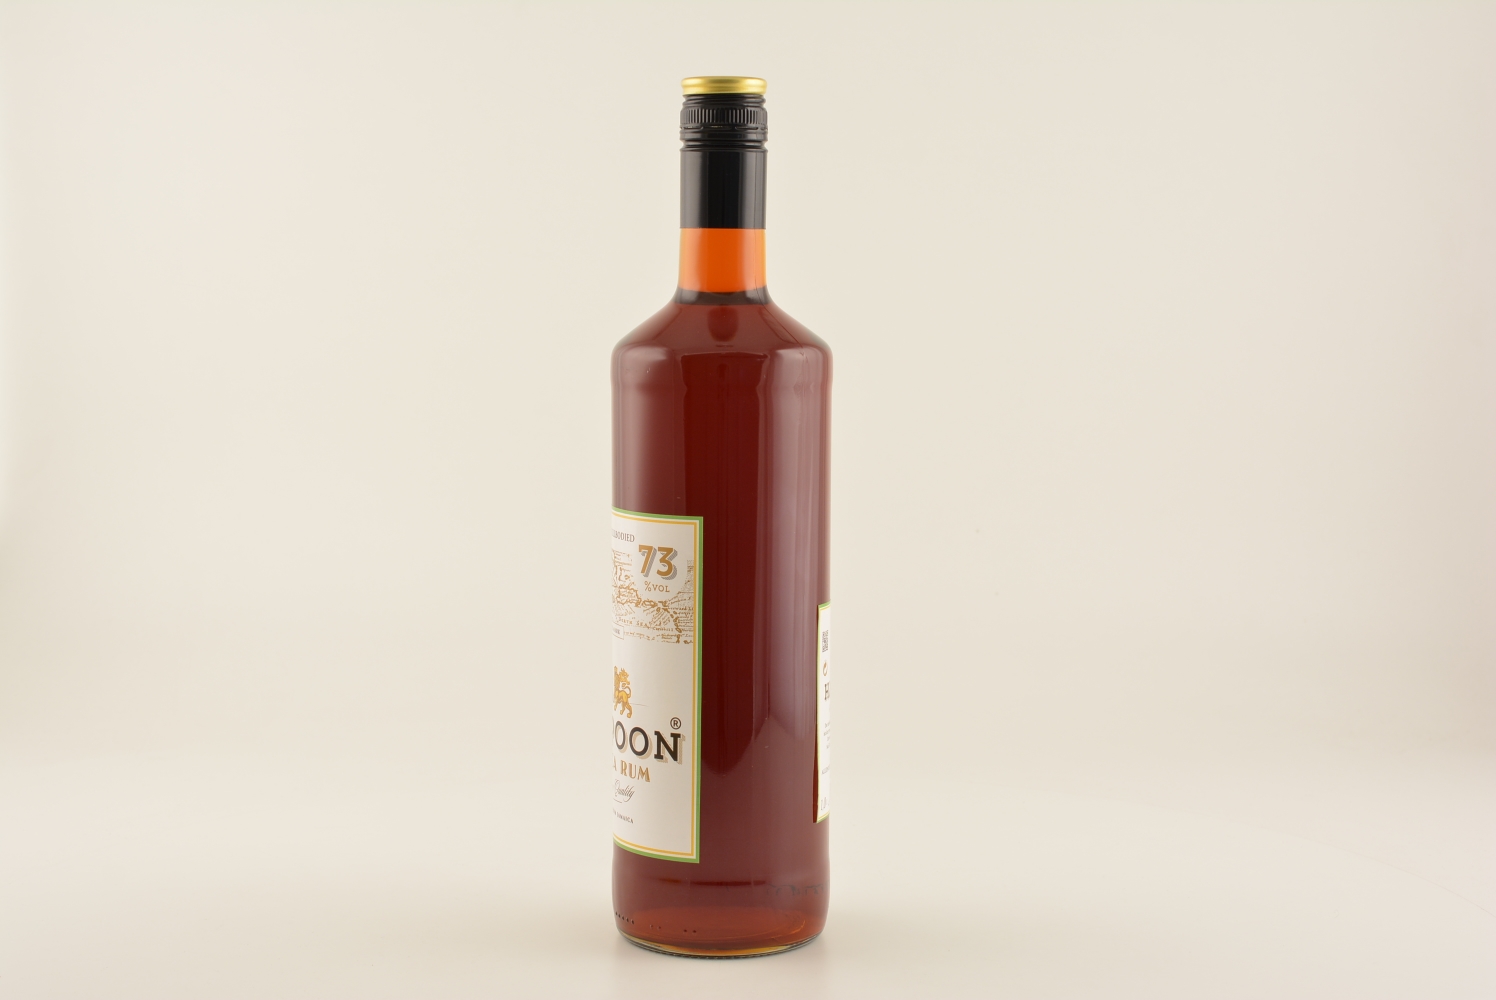 Harpoon Jamaica Rum Overproof 73% 1,0l